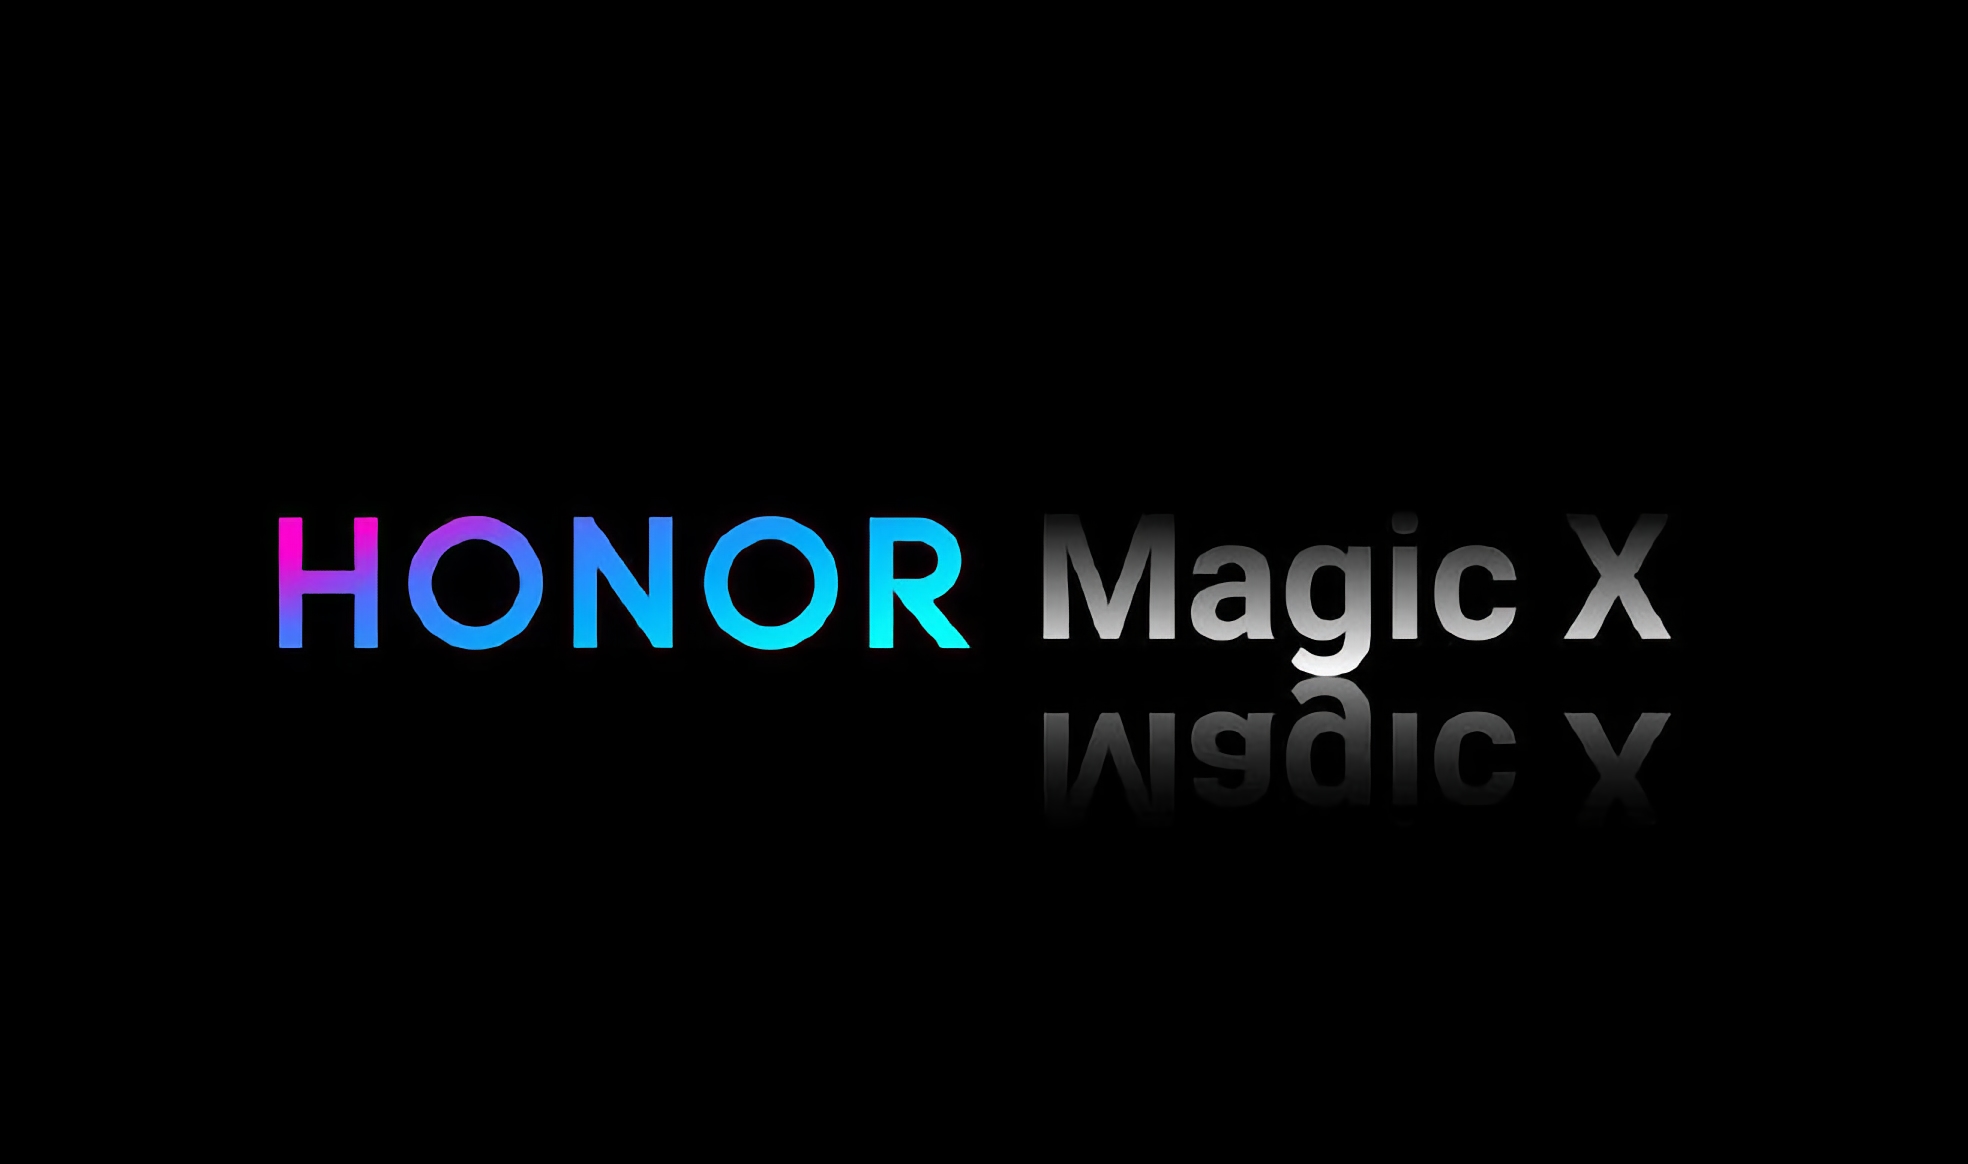 Інсайдер: перший складаний смартфон Honor отримає назву Magic X та вийде до кінця цього року